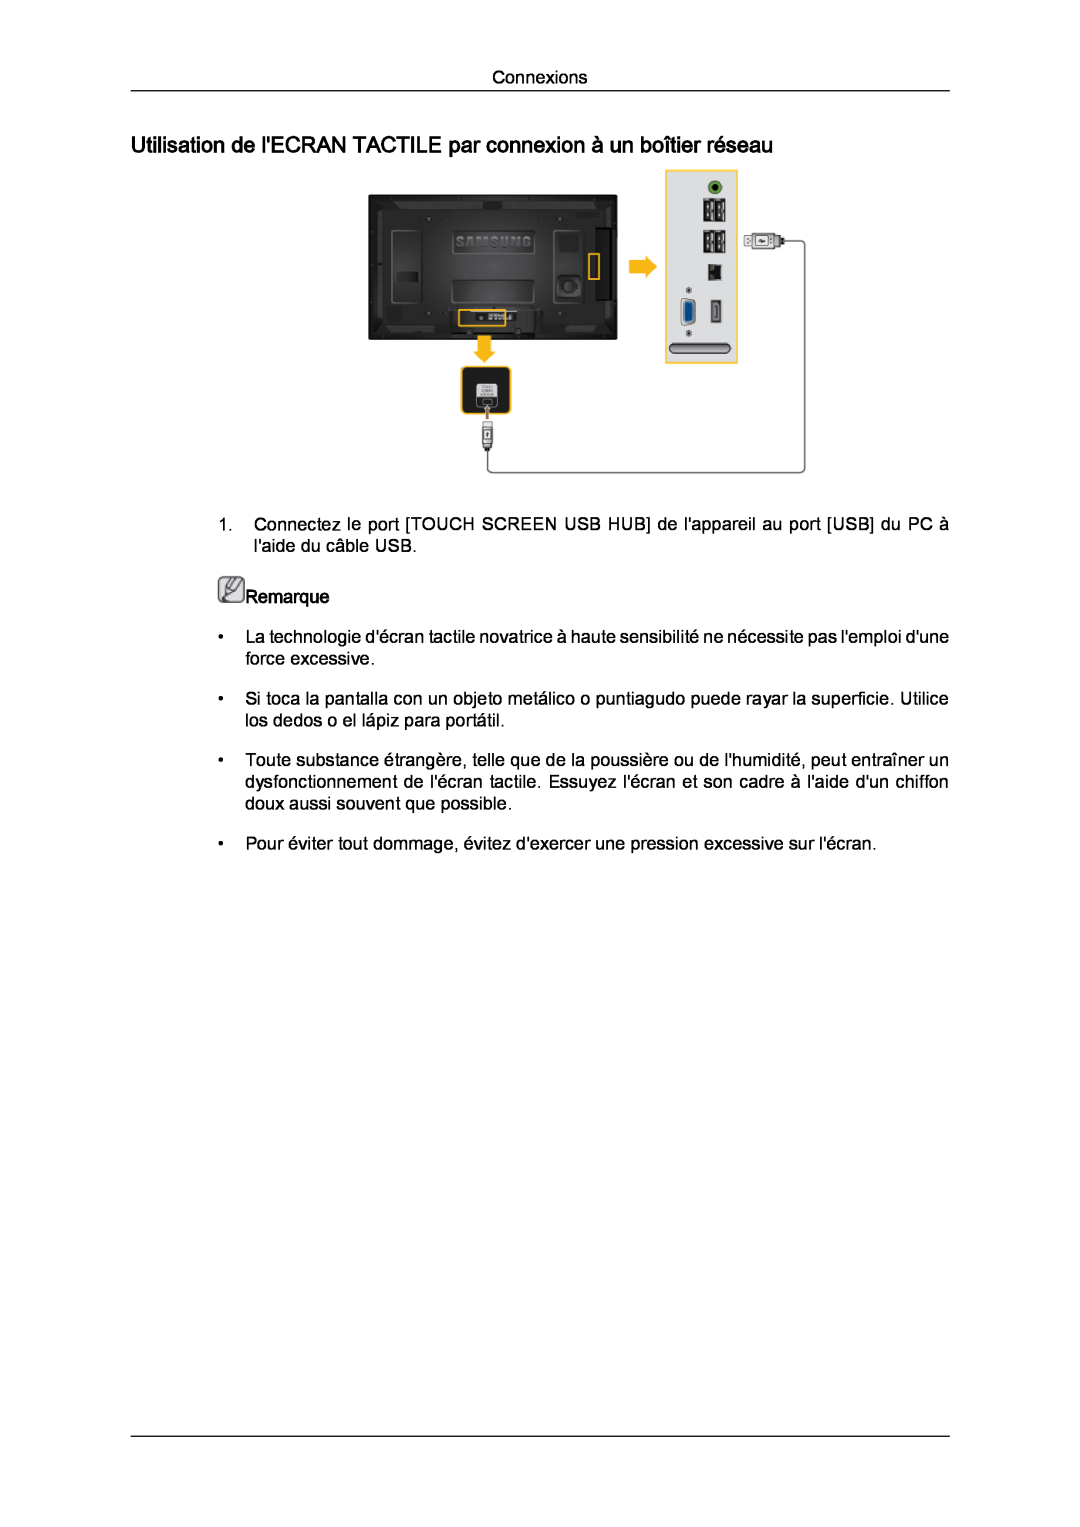 Samsung LH46CRPMBD/EN, LH46CRPMBC/EN manual Utilisation de lECRAN TACTILE par connexion à un boîtier réseau, Remarque 